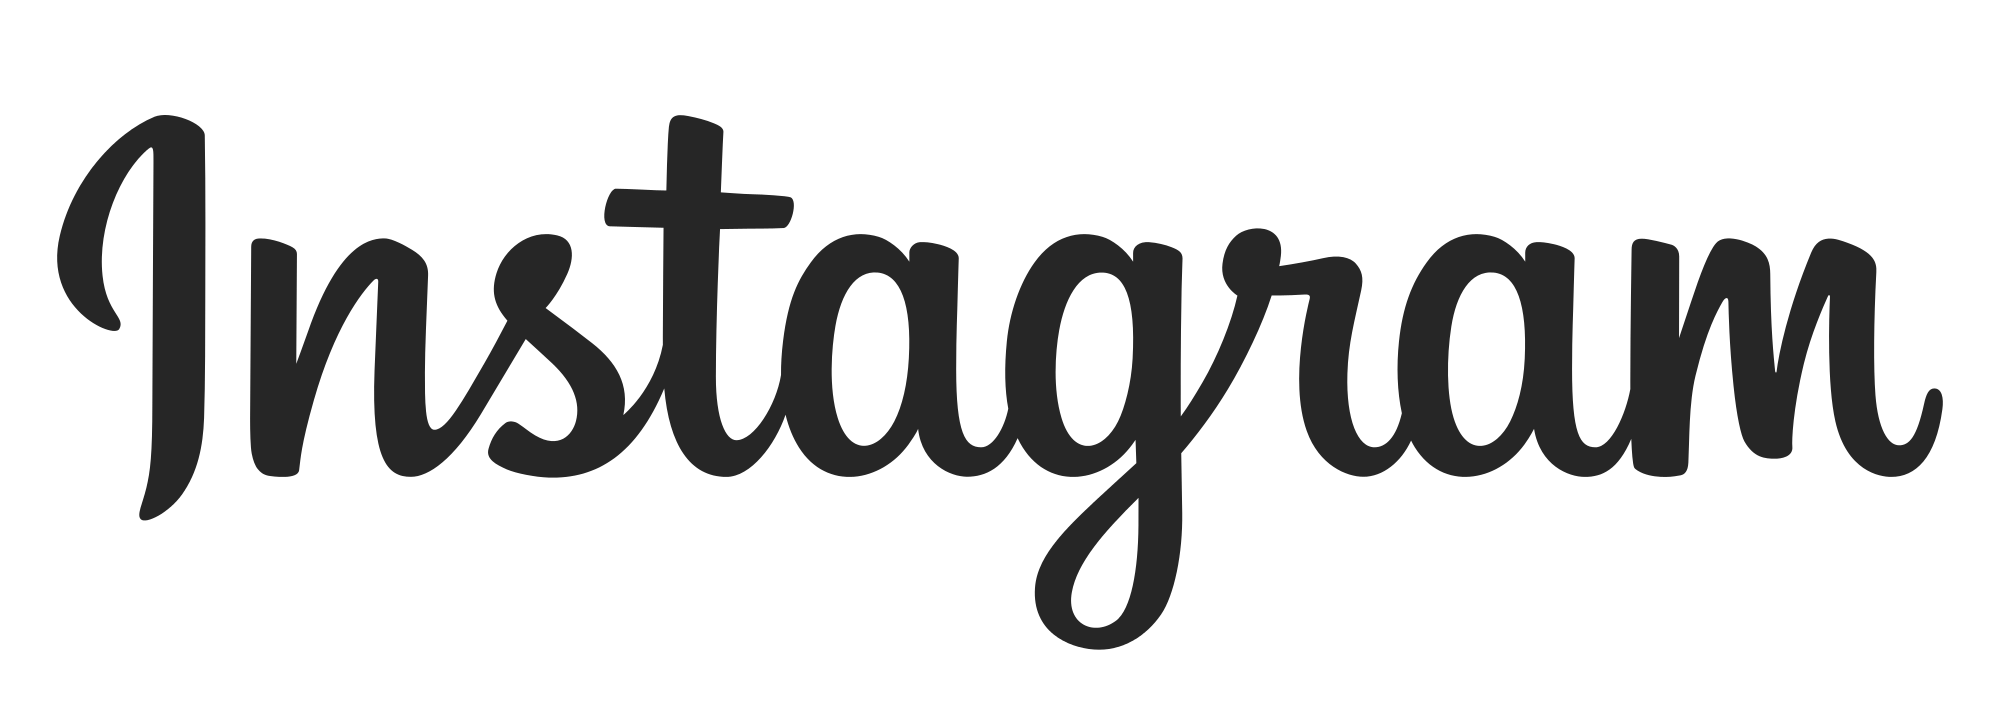 Ilustración de Instagram IG logo PNG Imagen Transparente